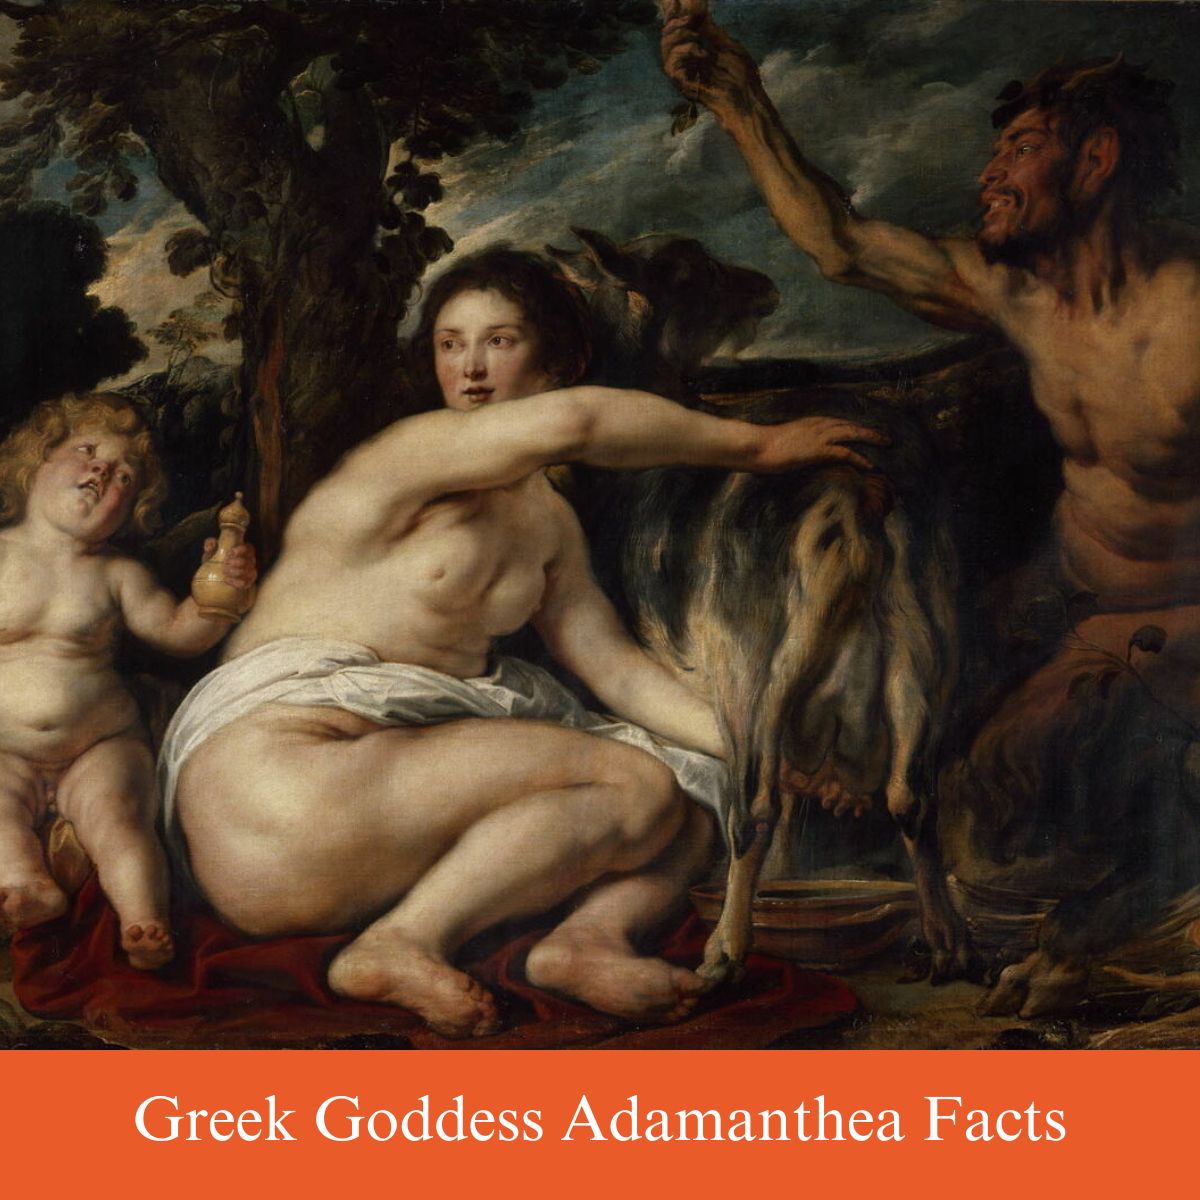 goddess adamanthea facts